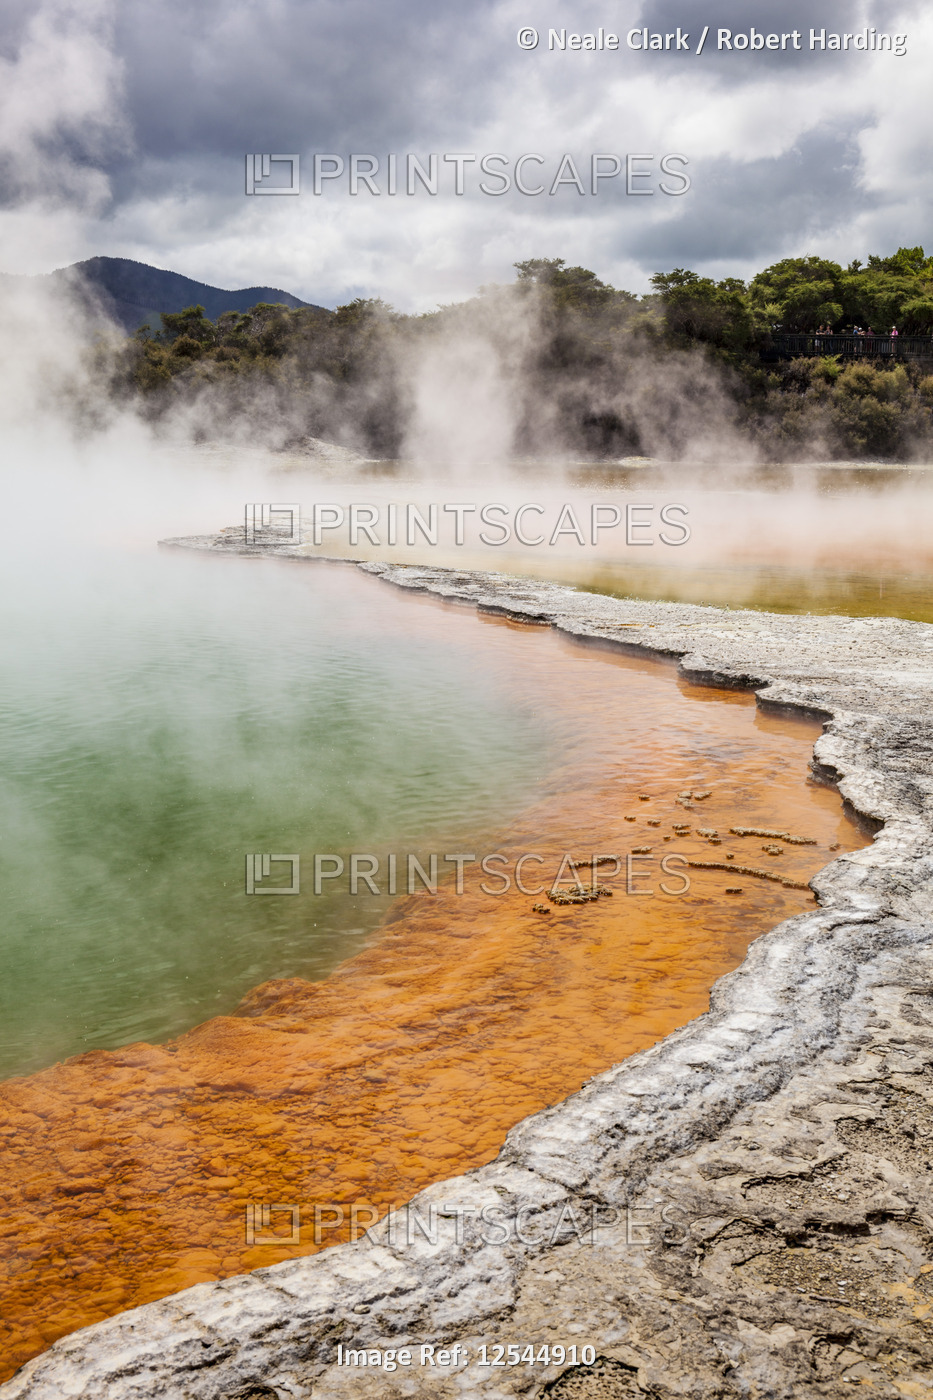 The Champagne pool, Wai-o-tapu thermal wonderland, geothermal area, Waiotapu, Rotorua, New Zealand, 